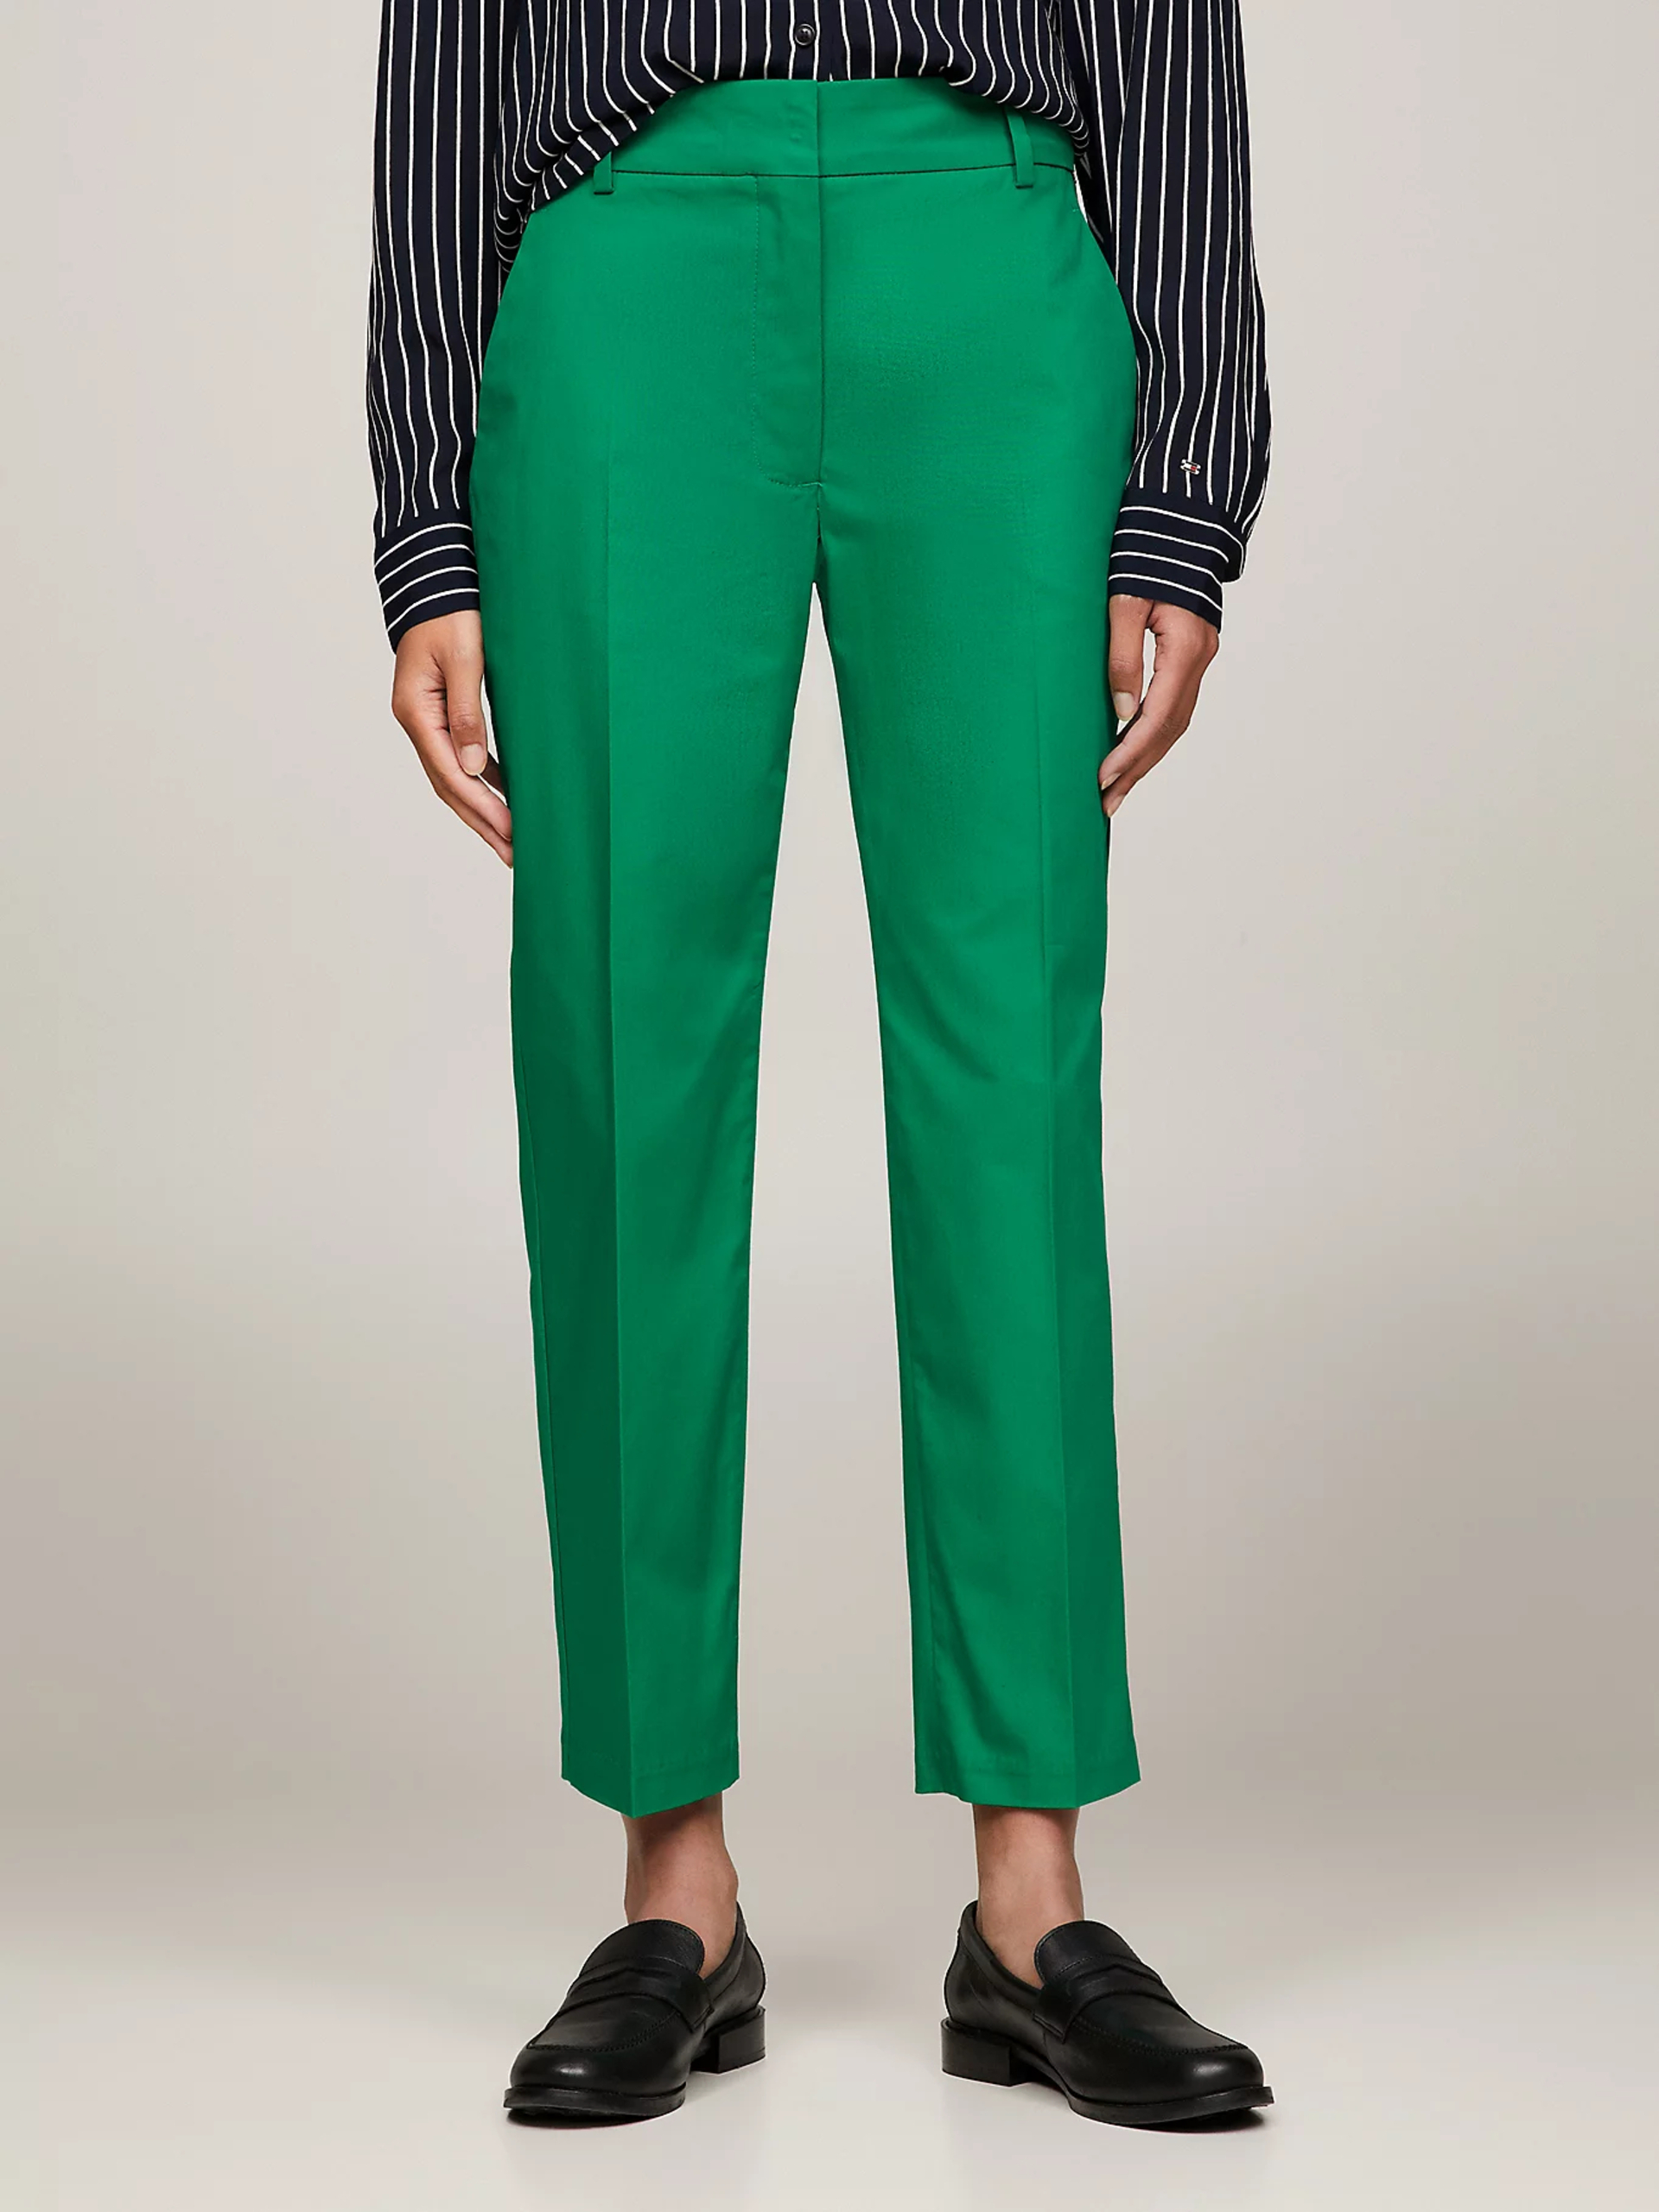 Tommy Hilfiger dámské zelené Chinos kalhoty - 38 (L4B)